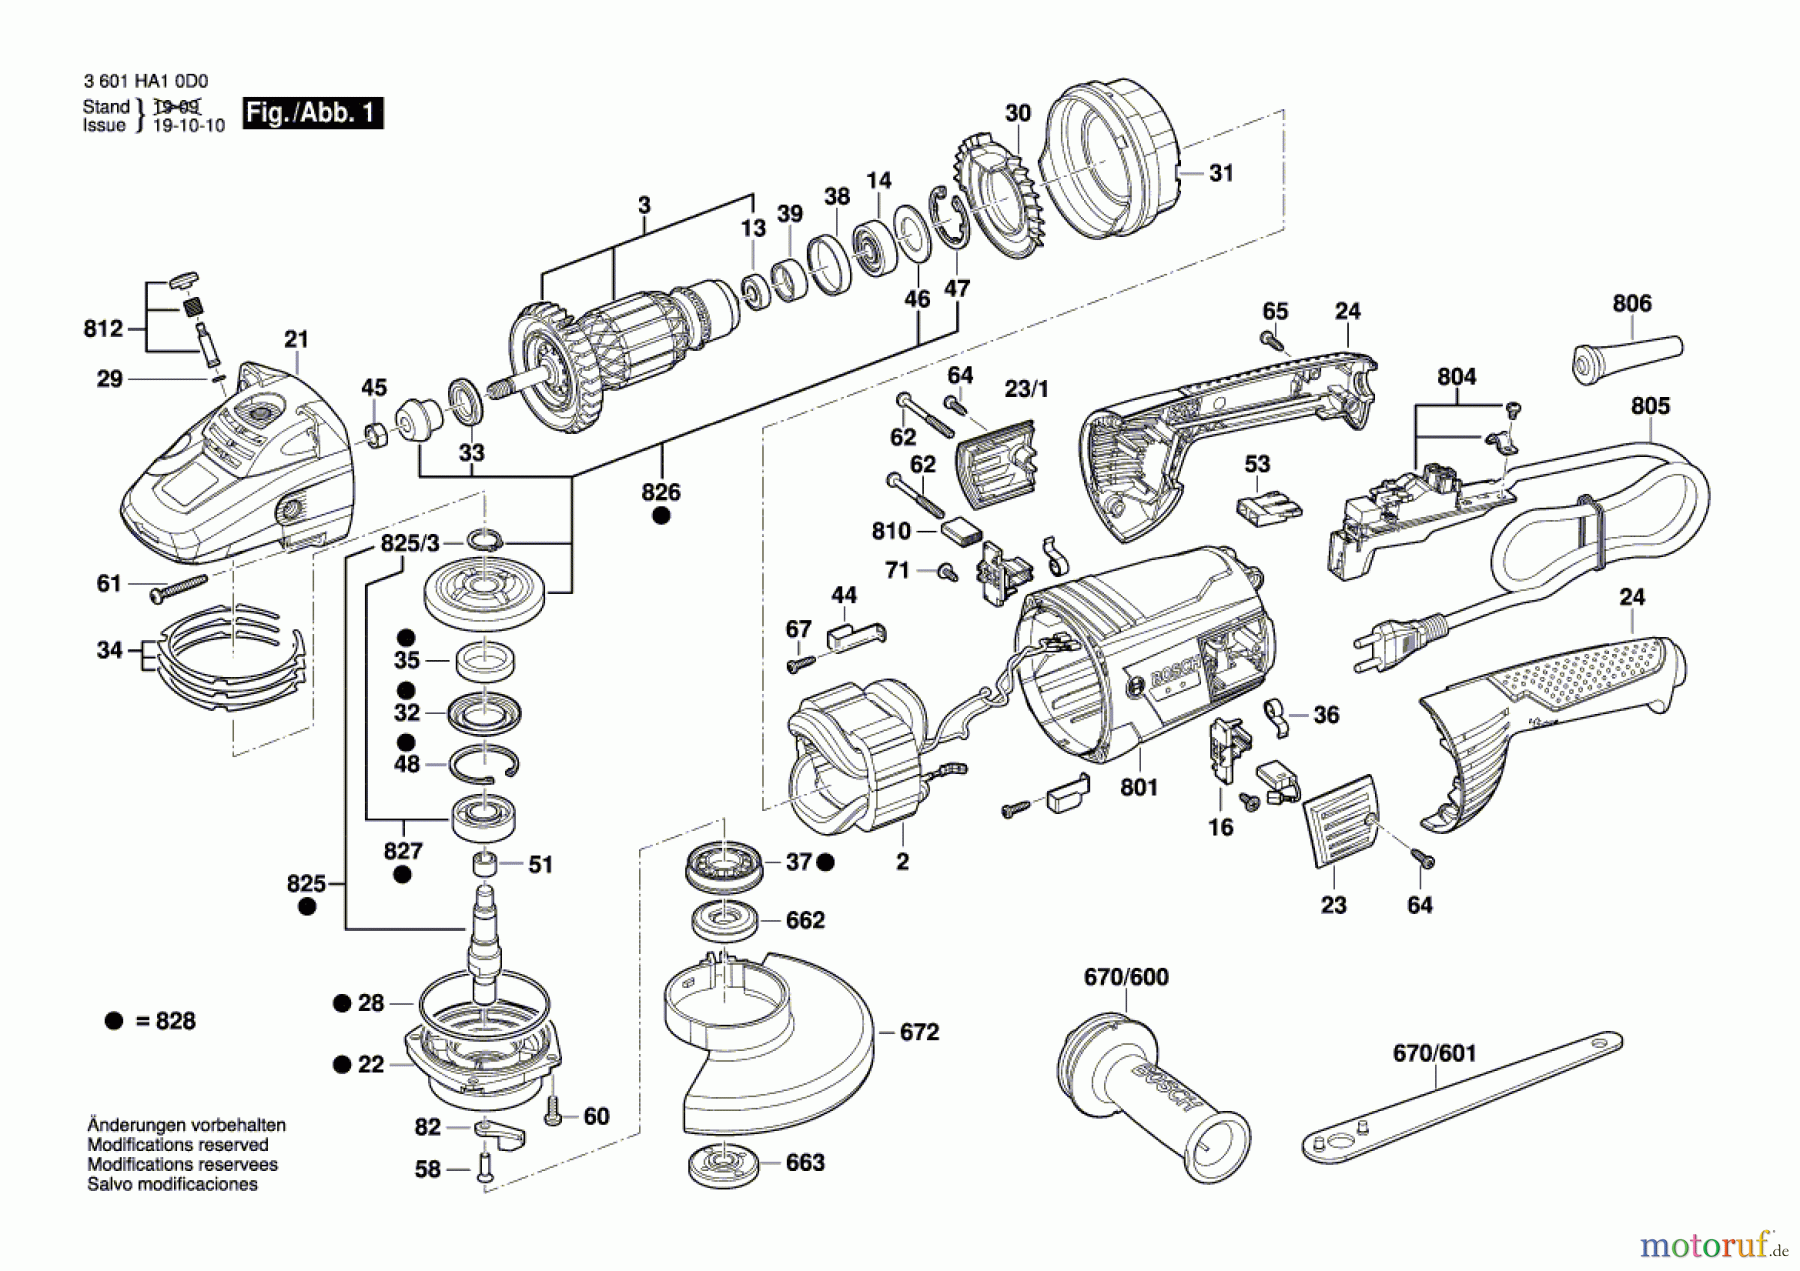  Bosch Werkzeug Winkelschleifer GWS 26-230 Seite 1